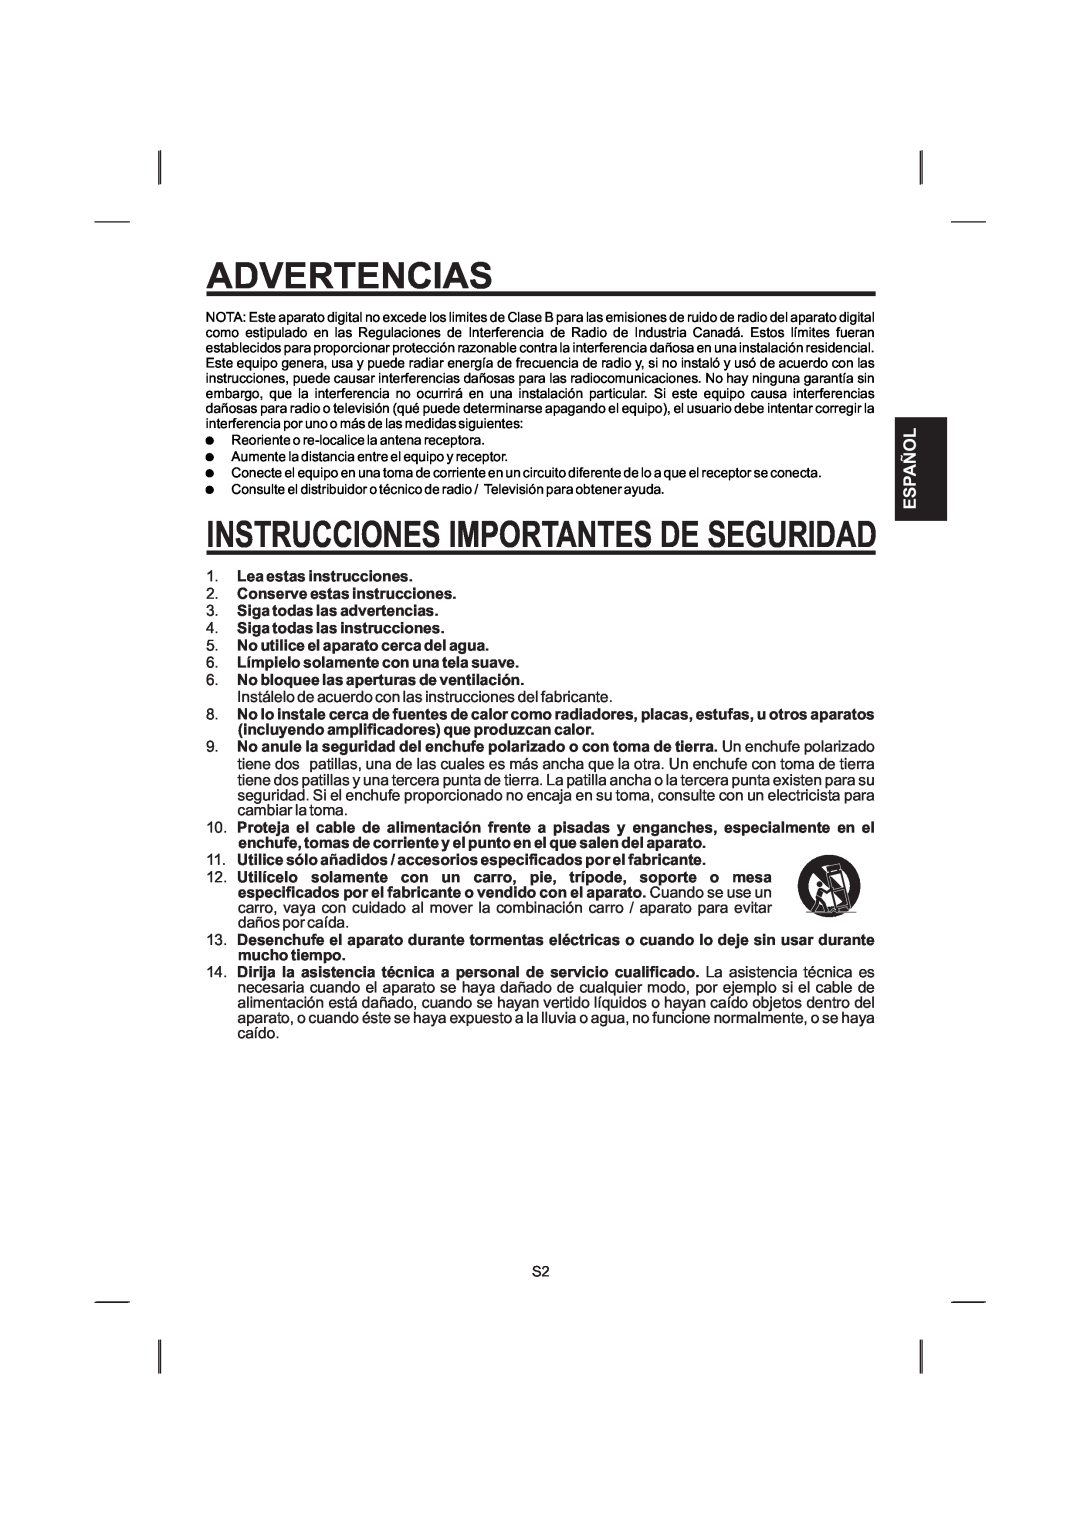 The Singing Machine STVG-559 manual Español, Advertencias, Instrucciones Importantes De Seguridad 